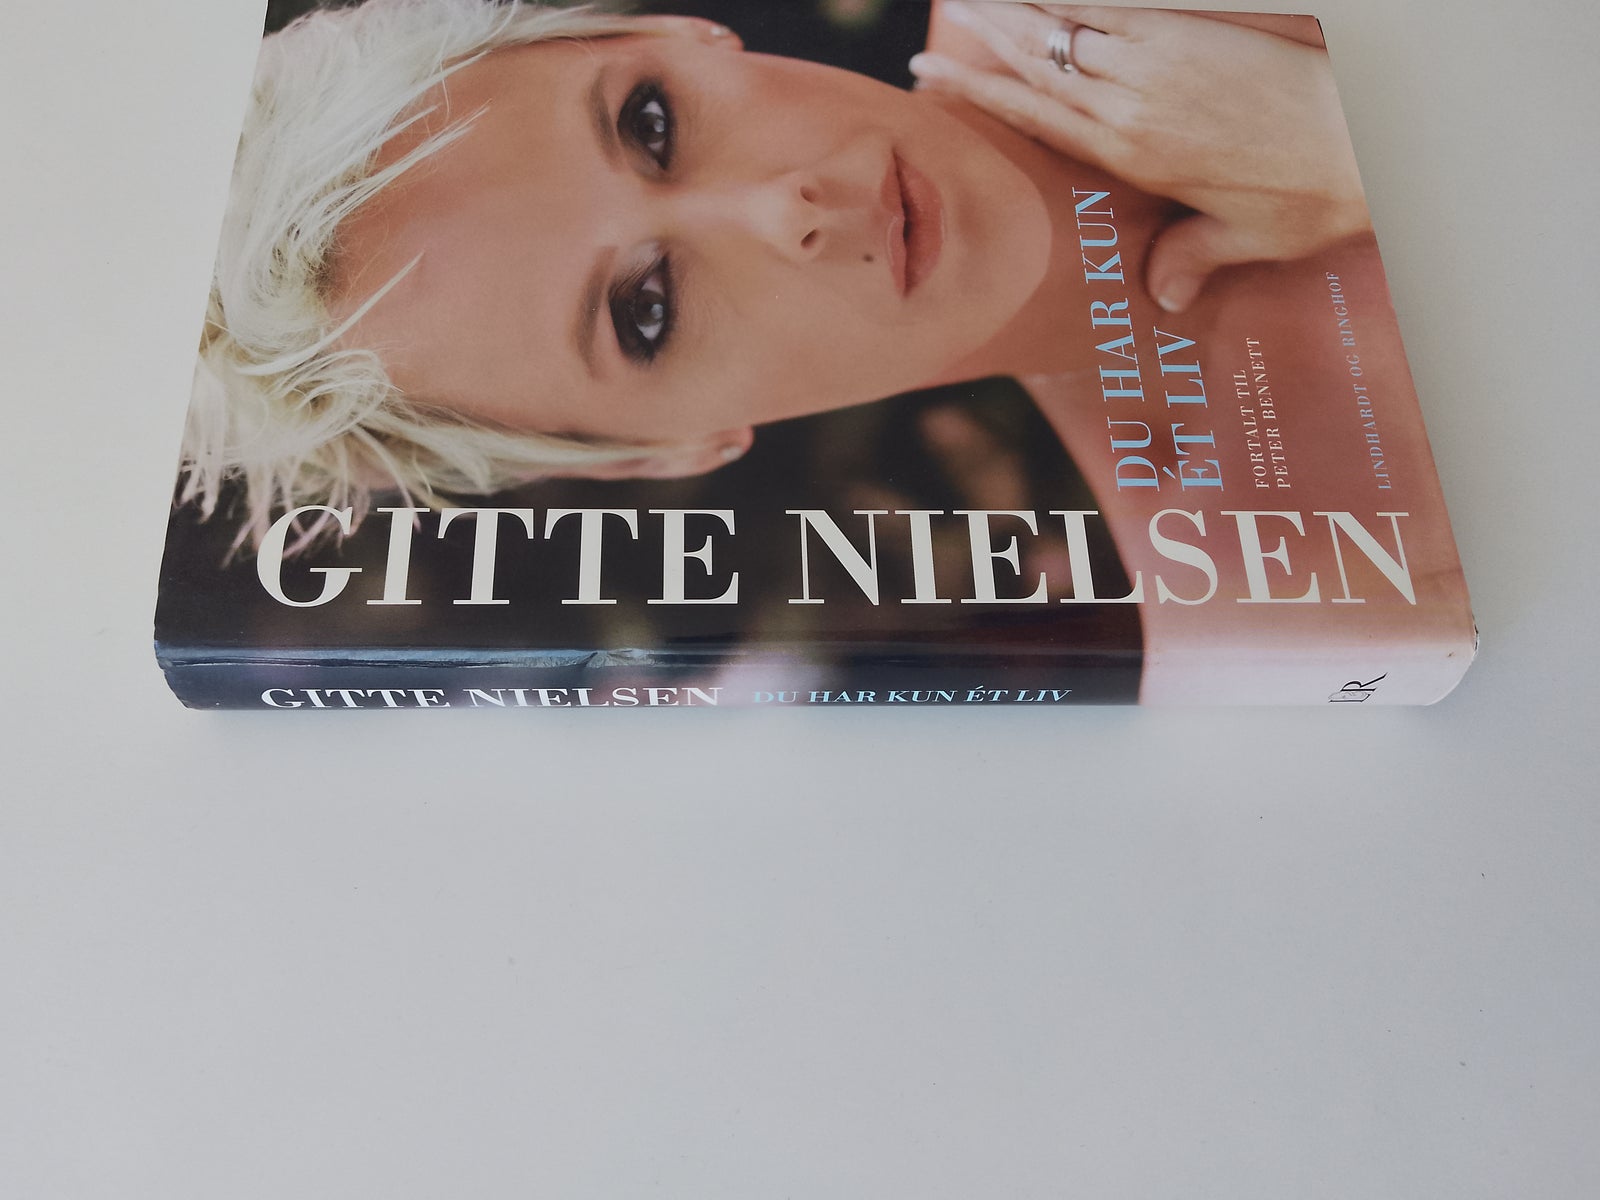 Du har kun ét liv, Gitte Nielsen